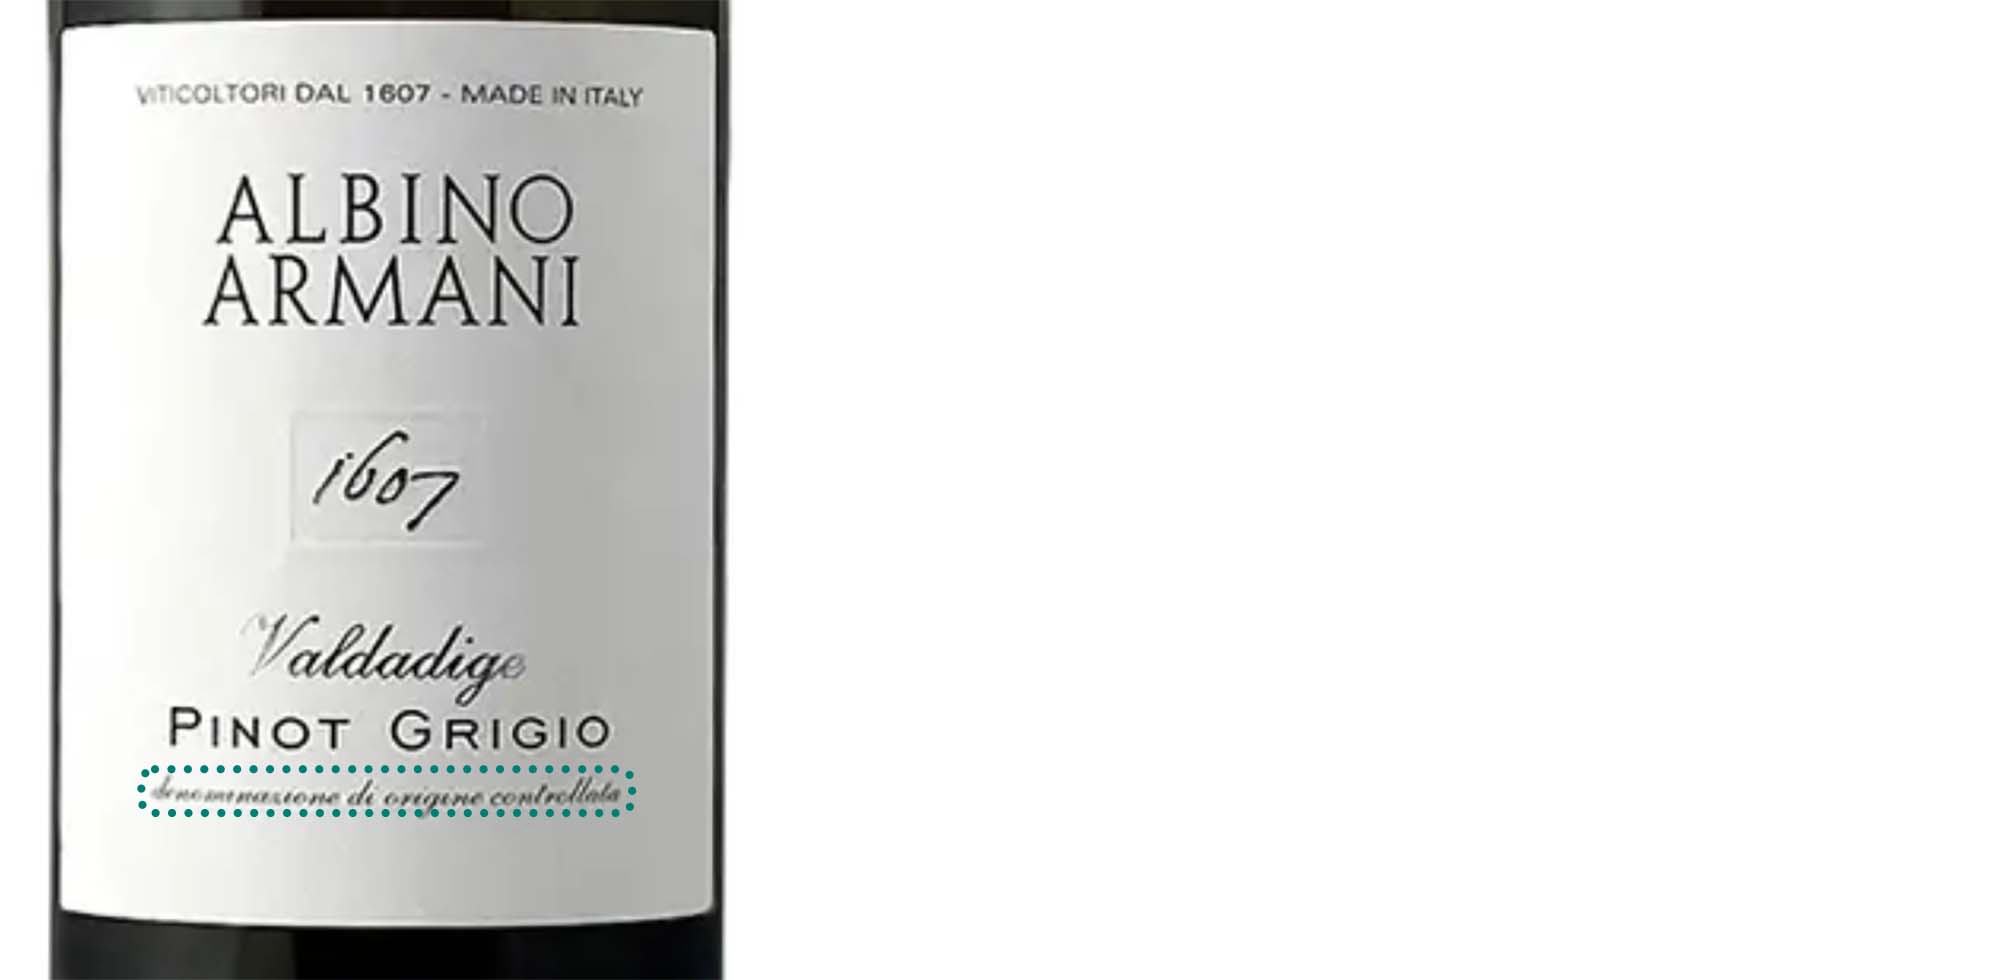 Albino Armani wine label: 1607 Valdadigo Pinot Grigio, Denominazione di Origine Controllata (DOC)